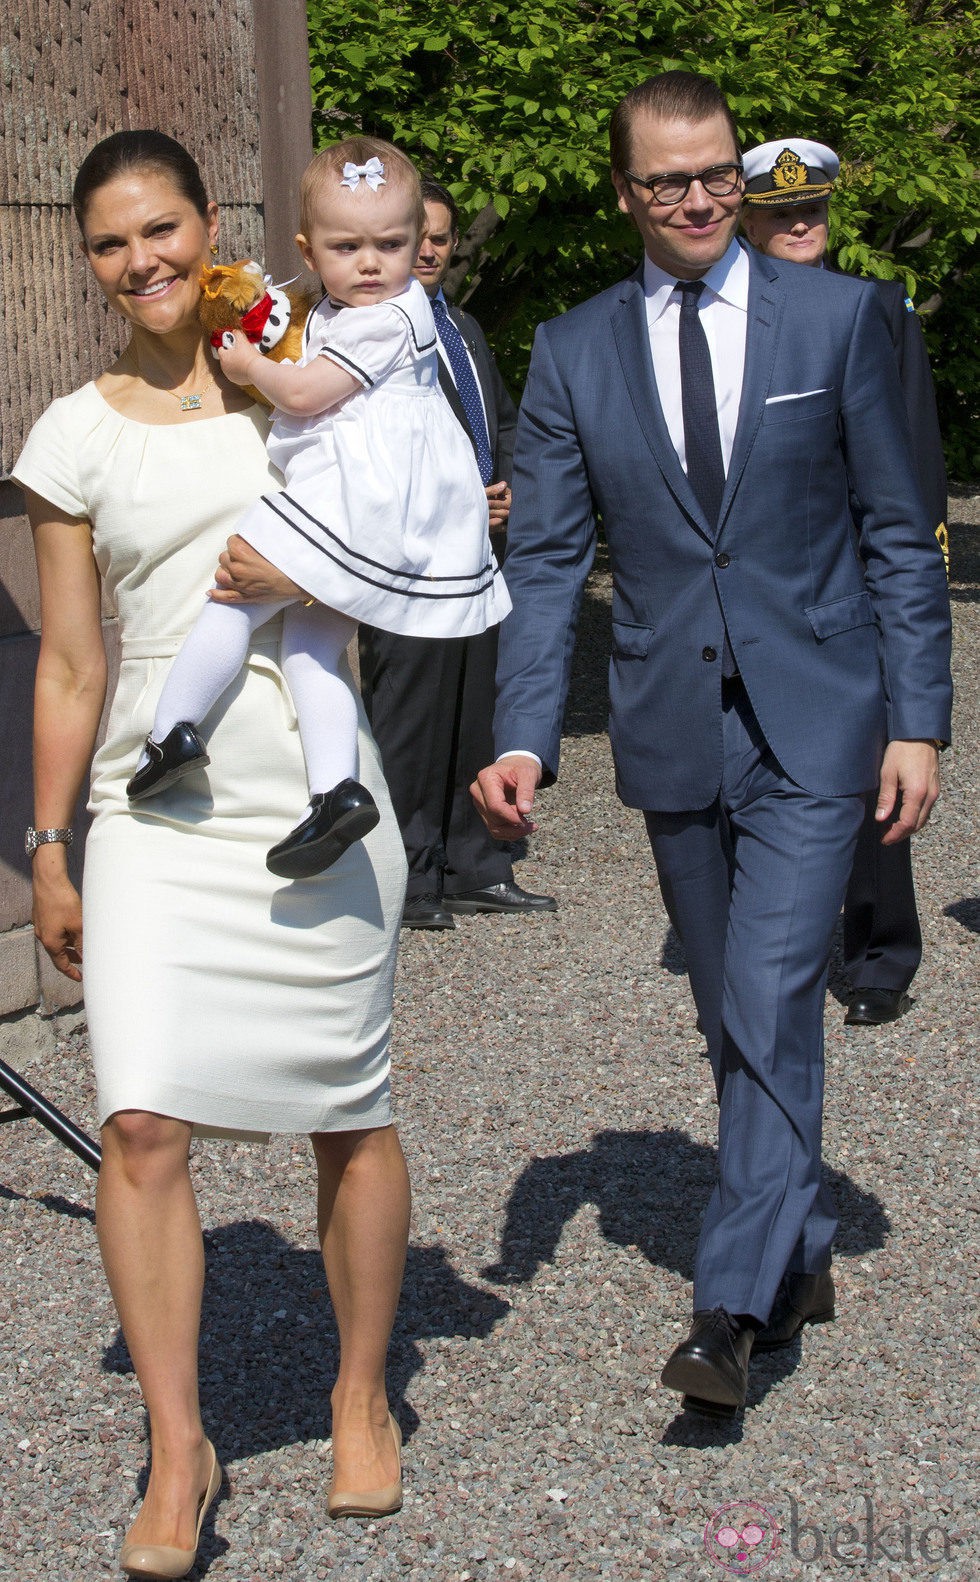 Victoria y Daniel de Suecia con la Princesa Estela en la apertura del Palacio Real